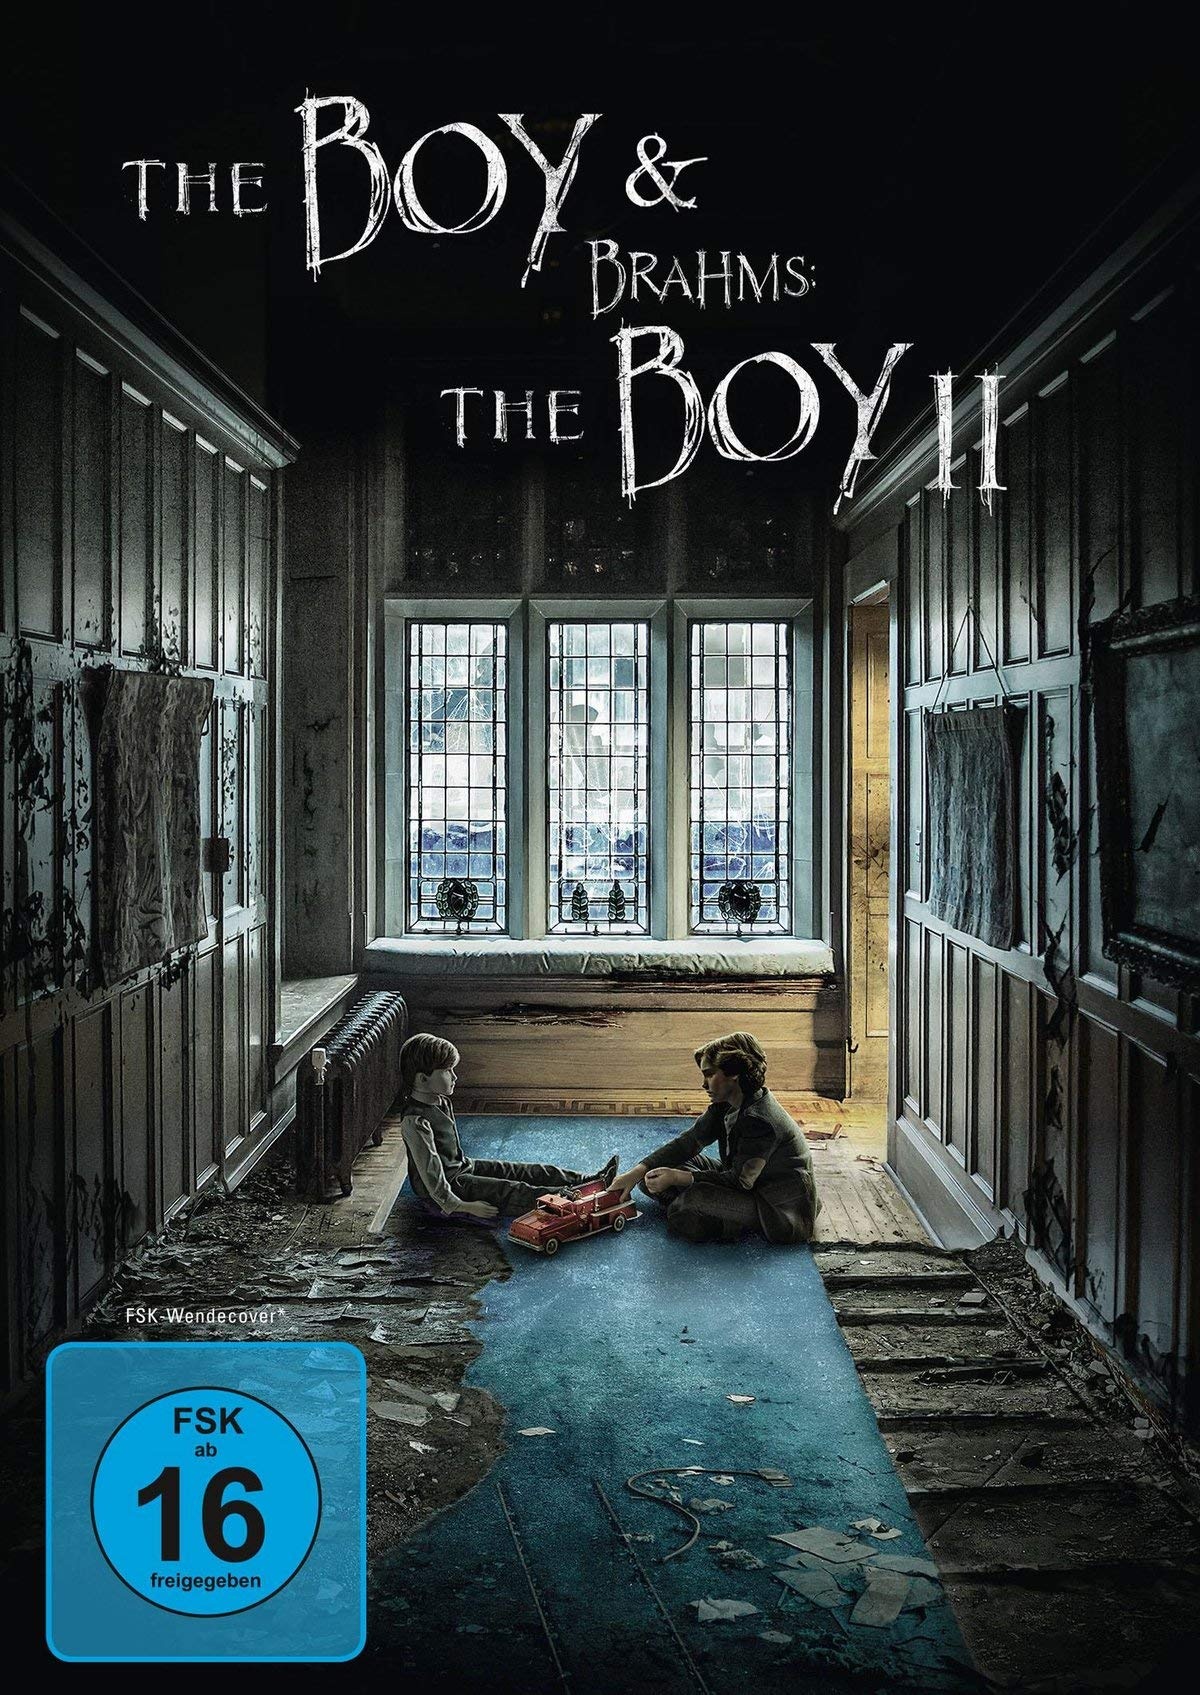 The Boy & Brahms: The Boy II [2 DVDs] (Neu differenzbesteuert)